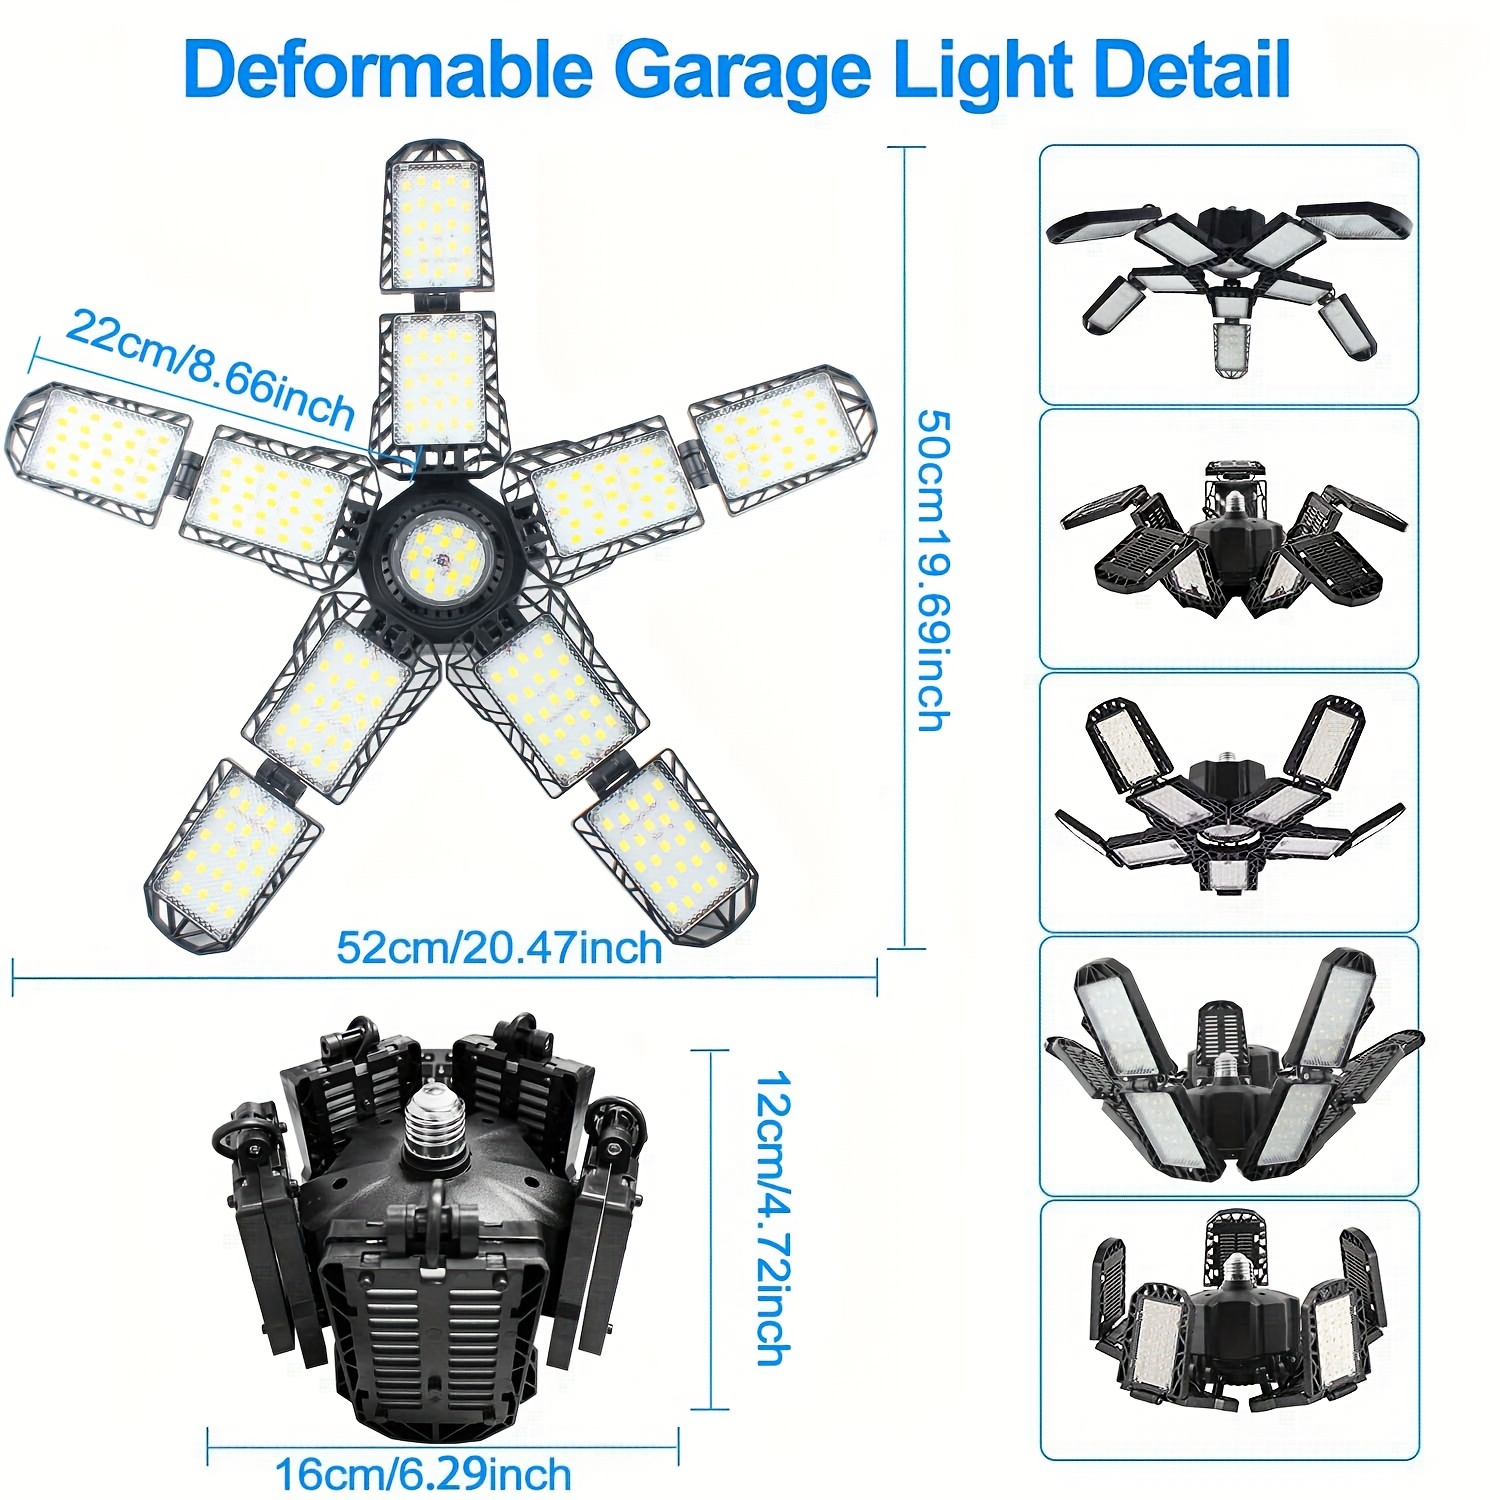 Lampe de garage LED lumineuse 15000LM - Éclairage LED déformable pour garage,  grenier, entrepôt, atelier, sous-sol (150W)